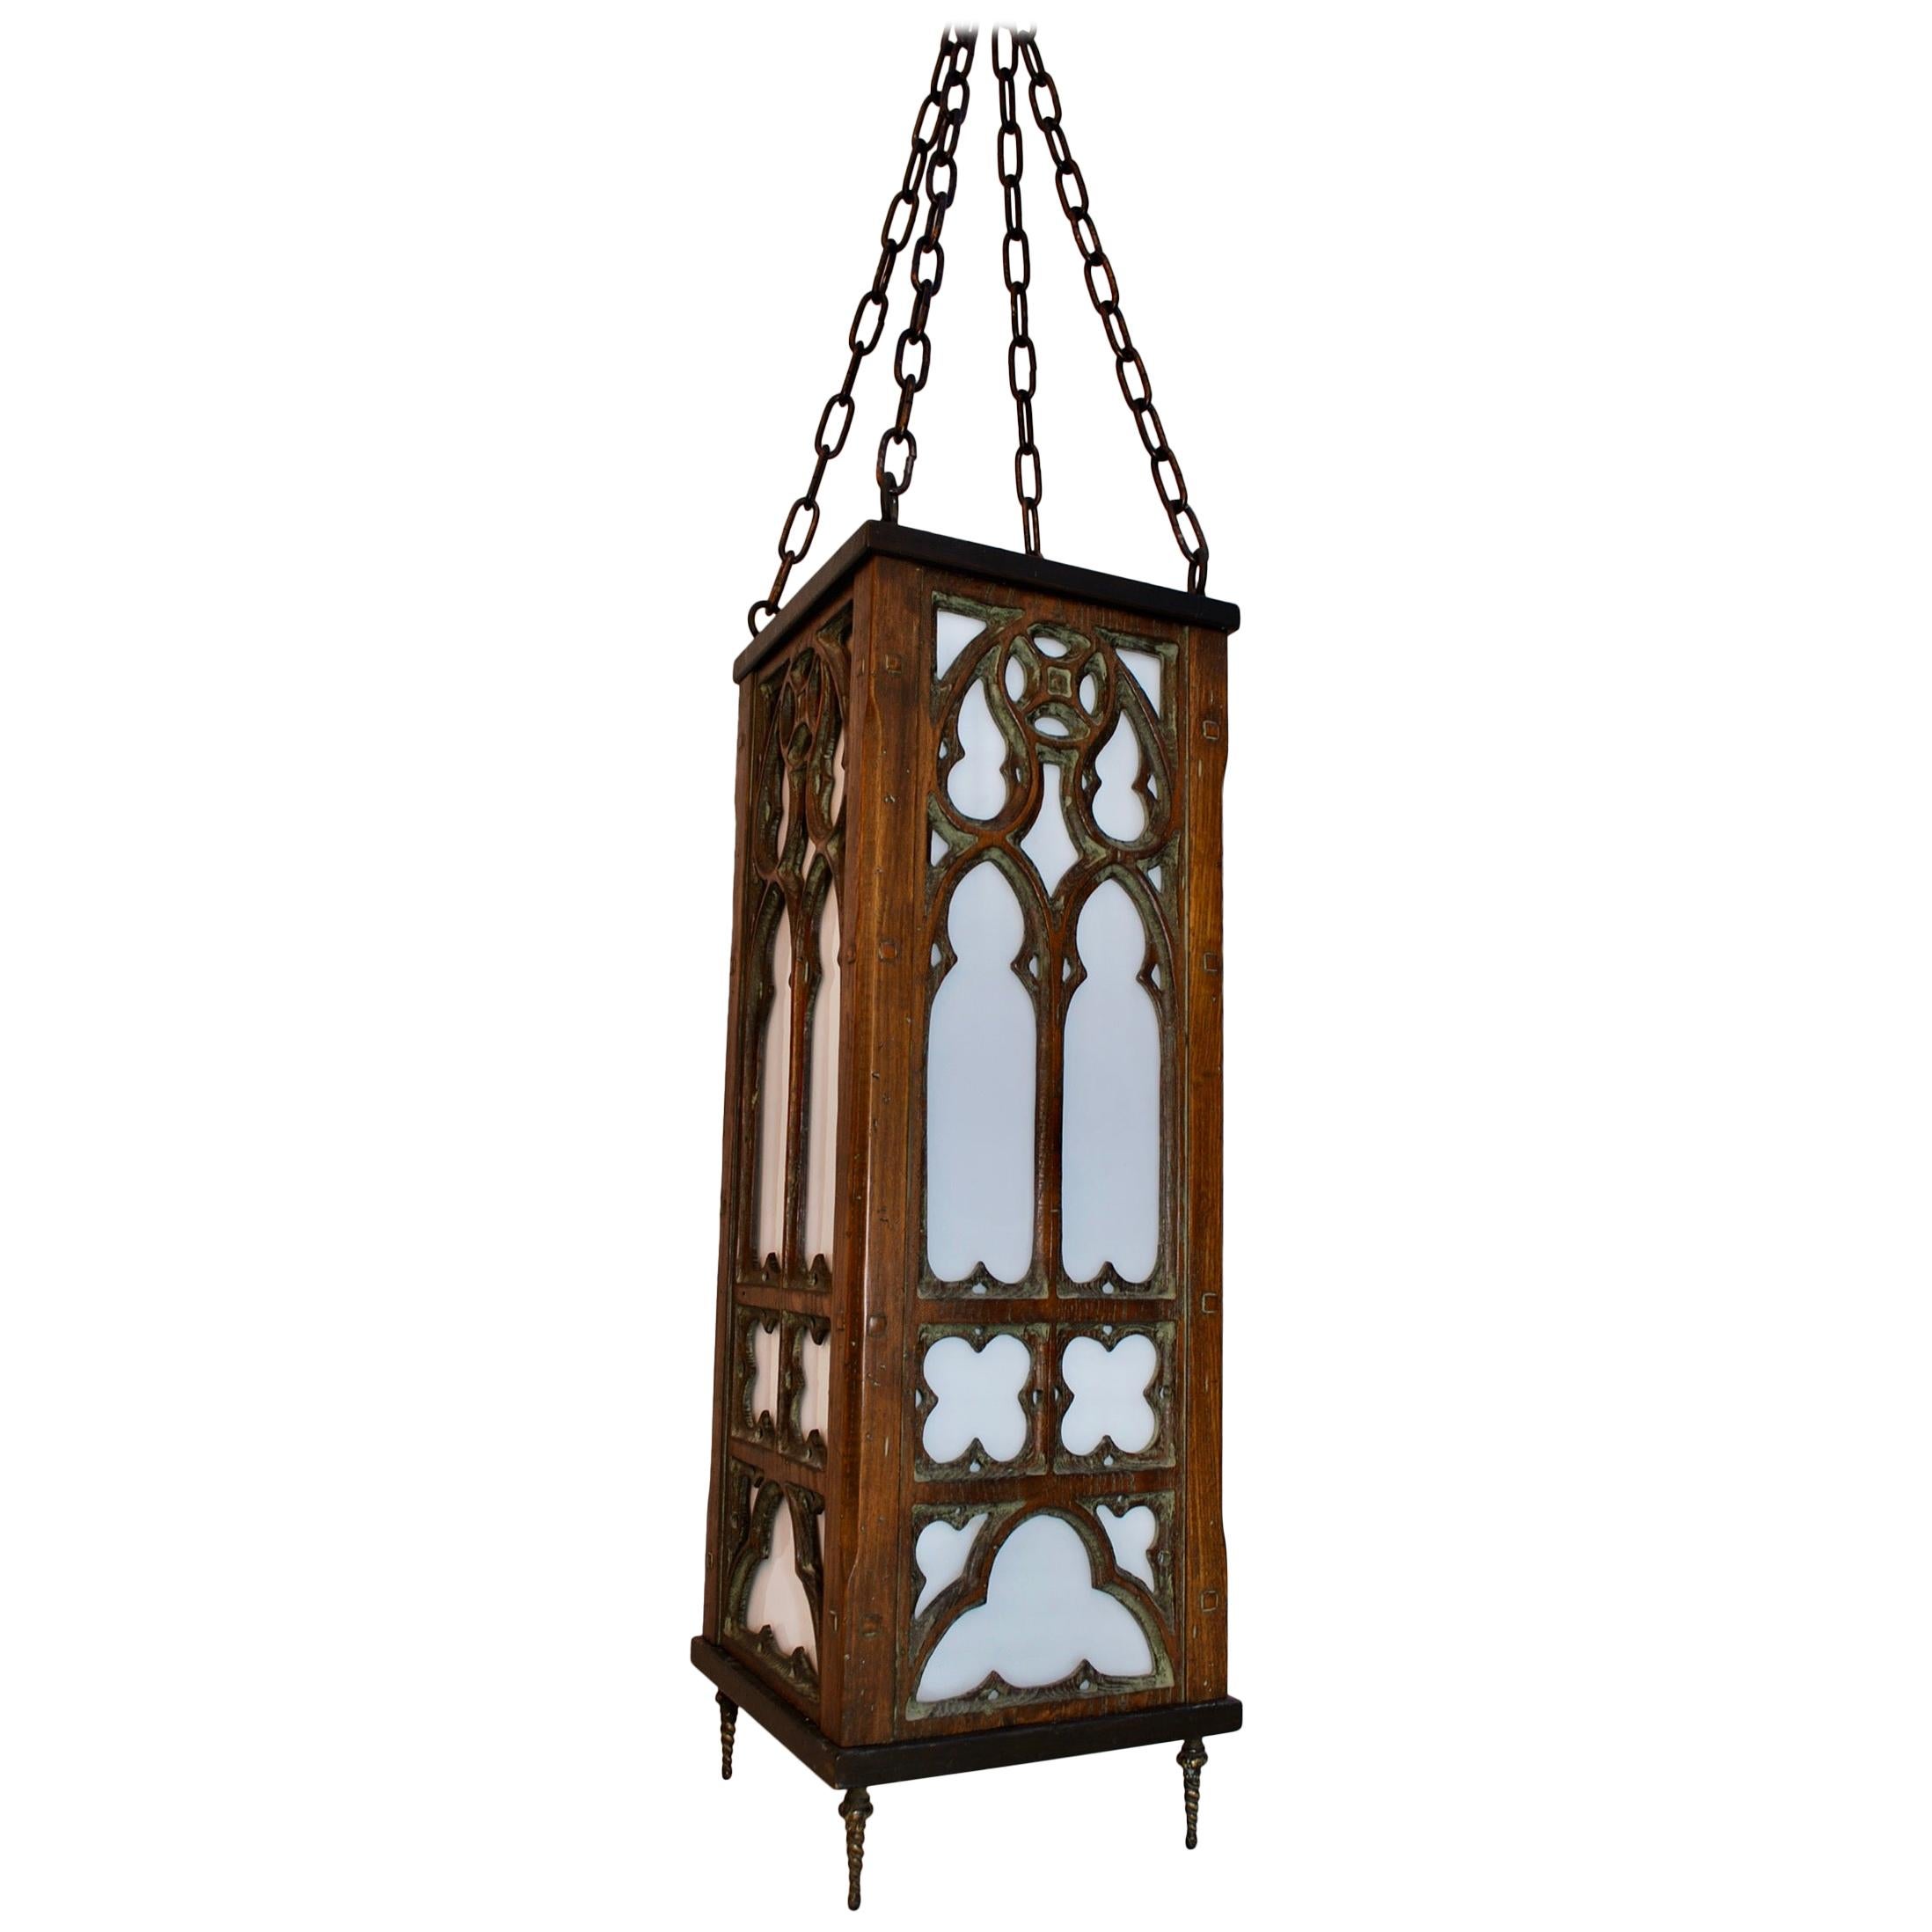 Magnifique lanterne gothique en bois des années 1920